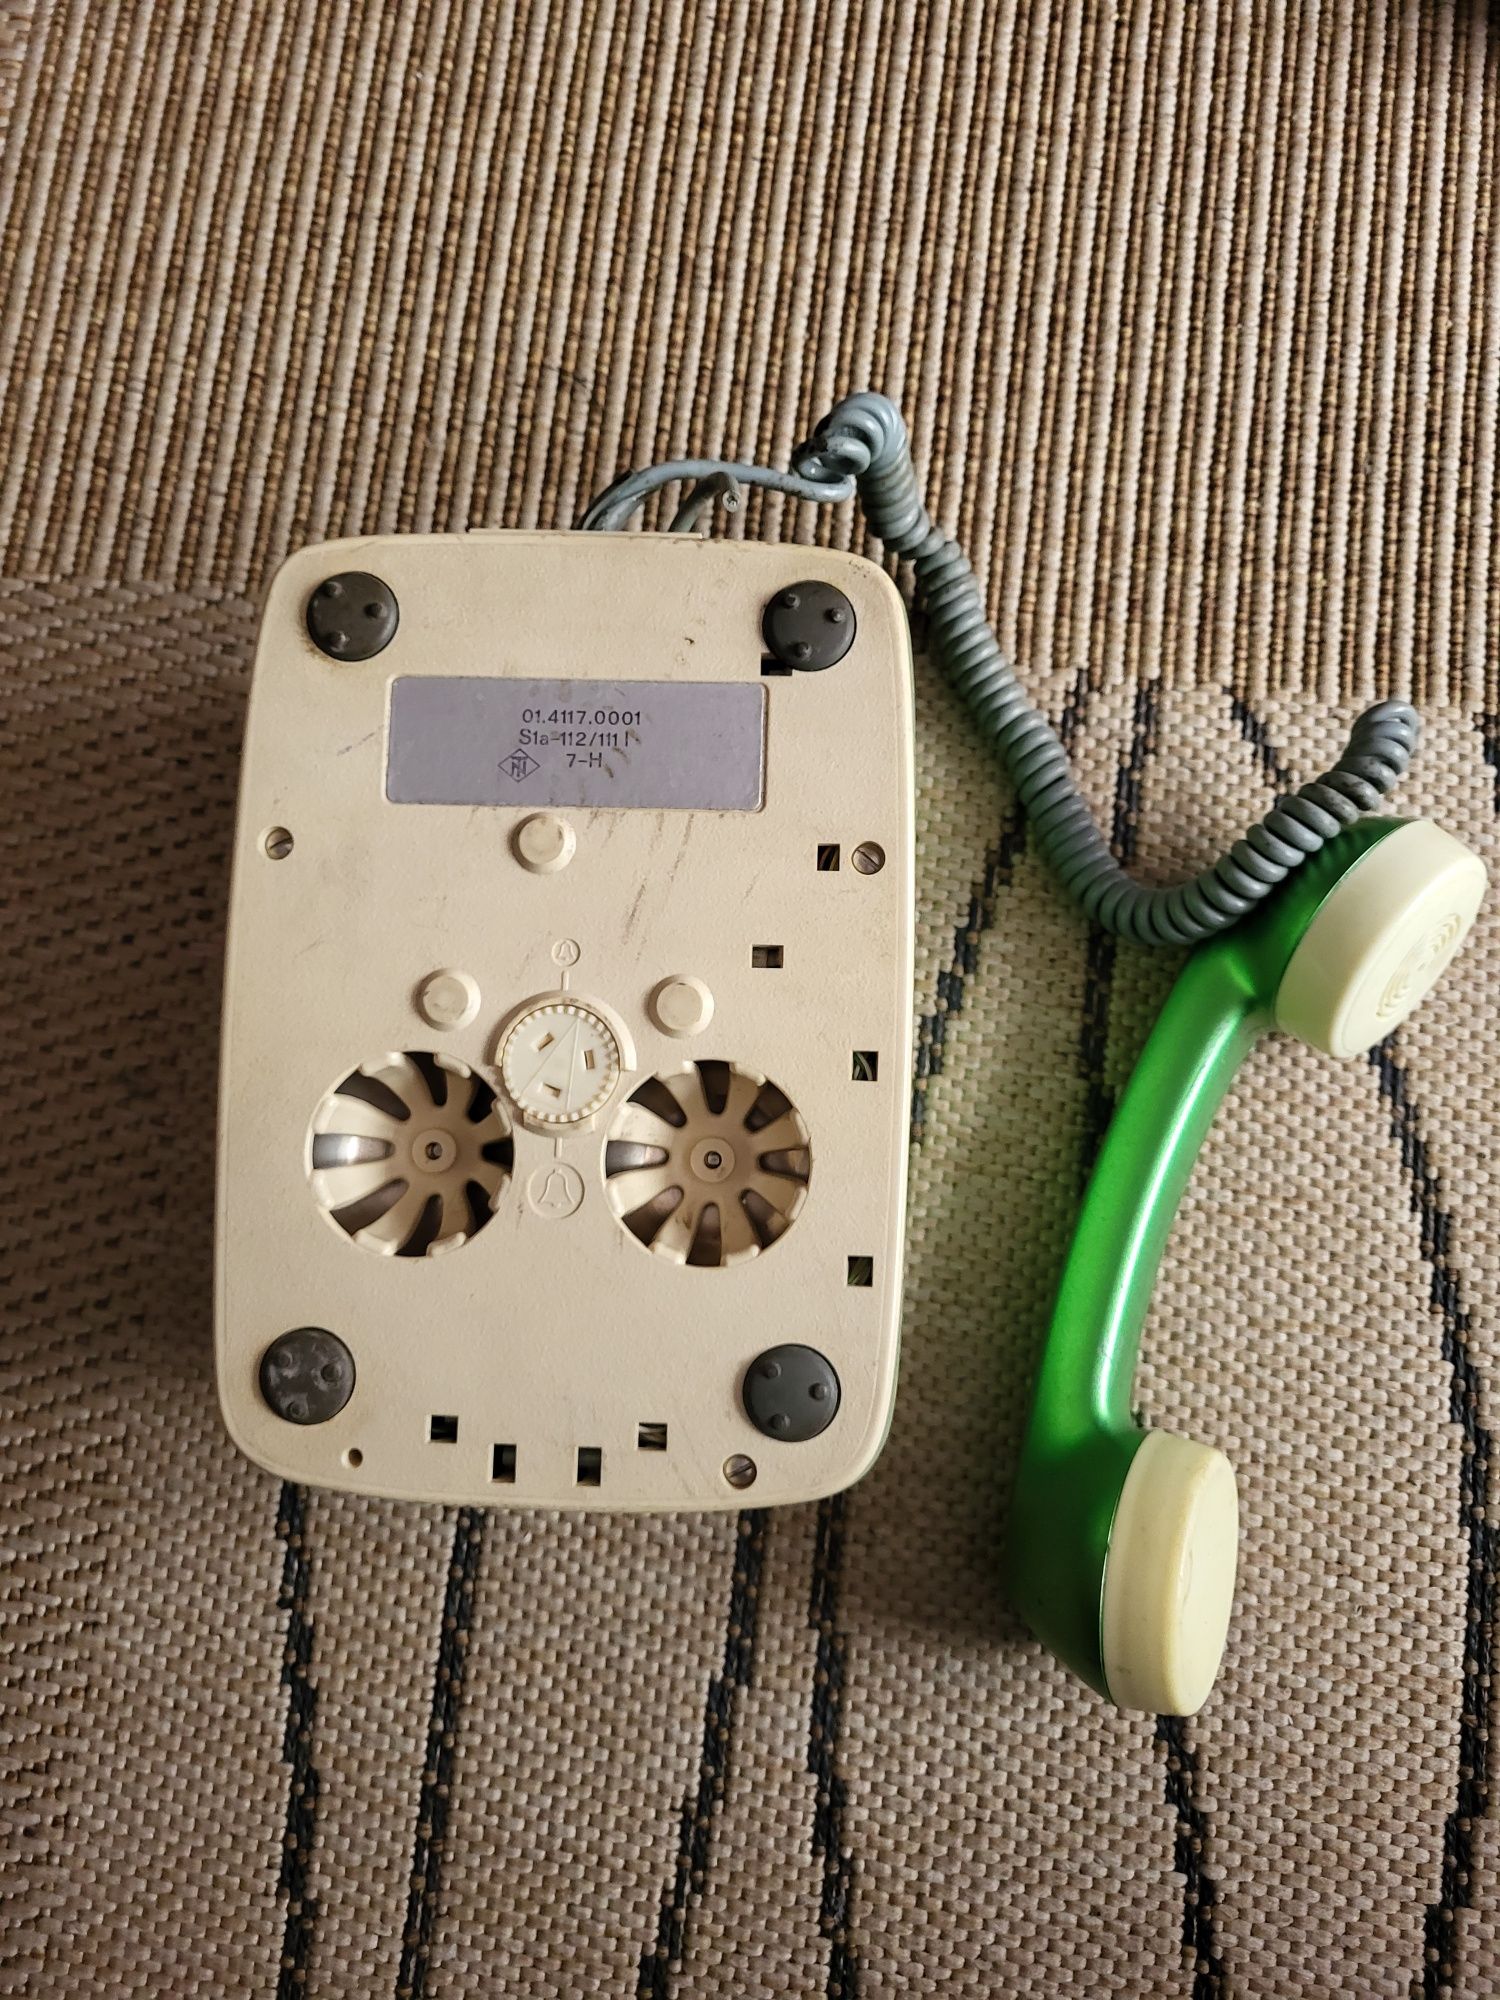 Stary aparaty telefoniczny przedmiot kolekcjonerski